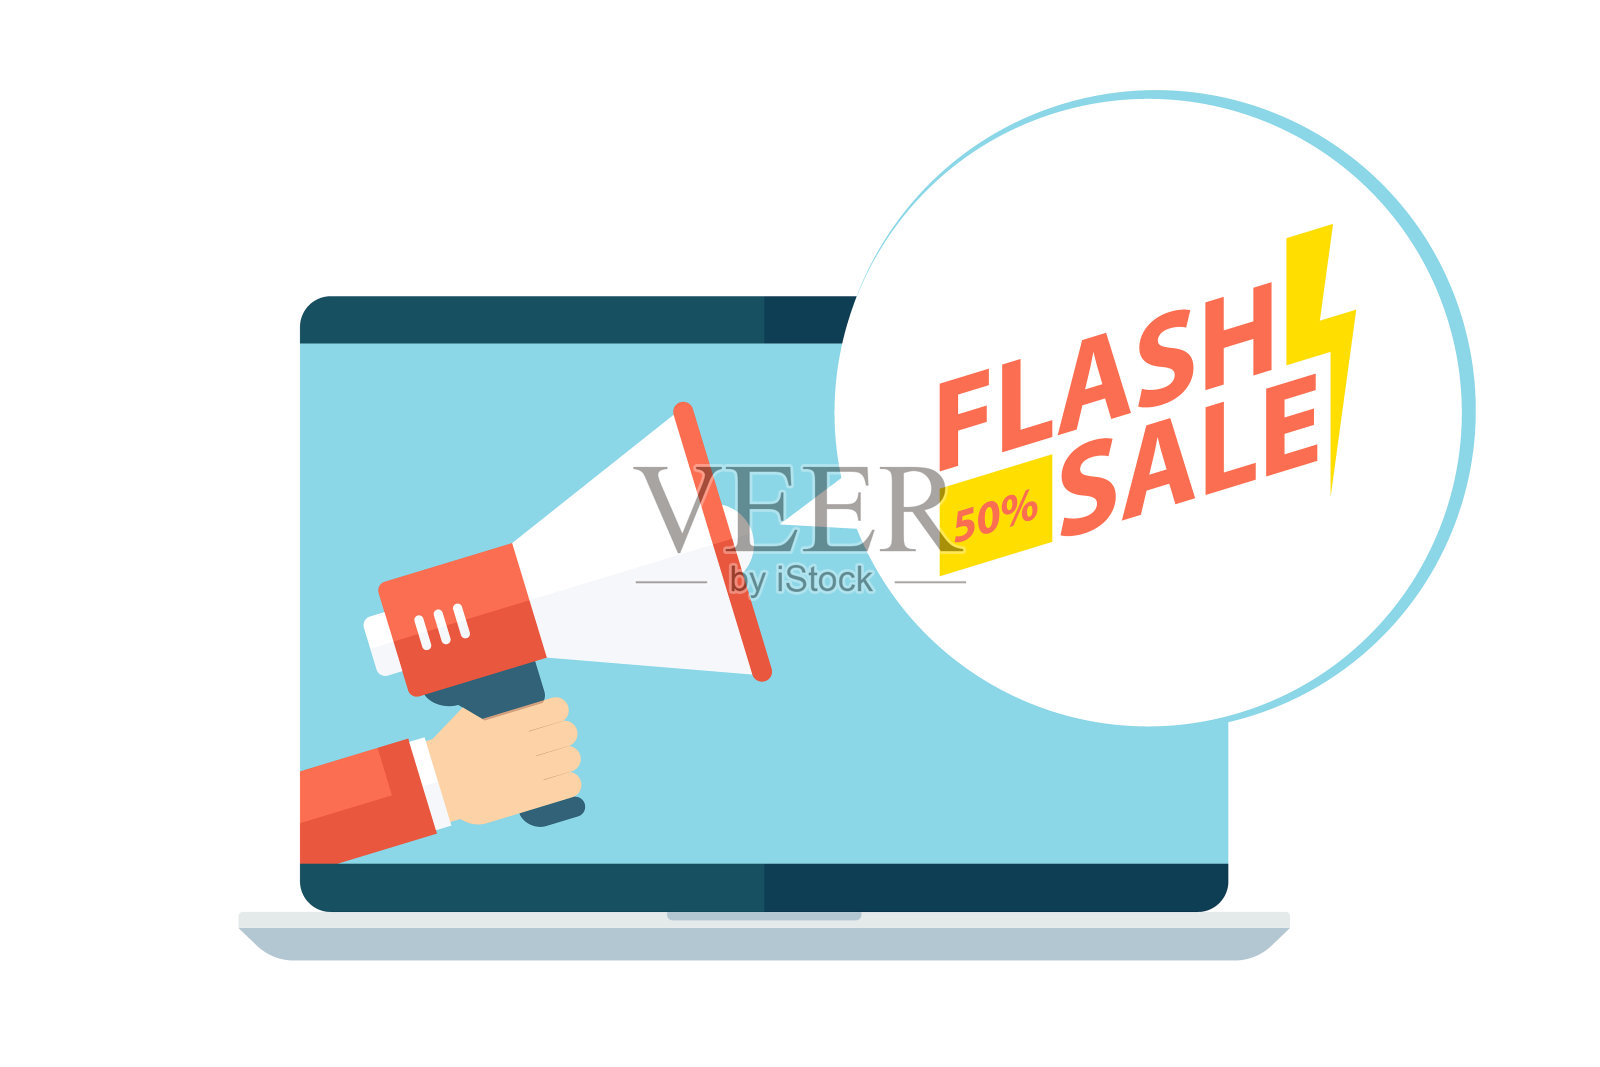 Flash Sale语音气泡手持扩音器从笔记本电脑出来。商业、折扣购物、促销、广告平面设计。设计元素图片